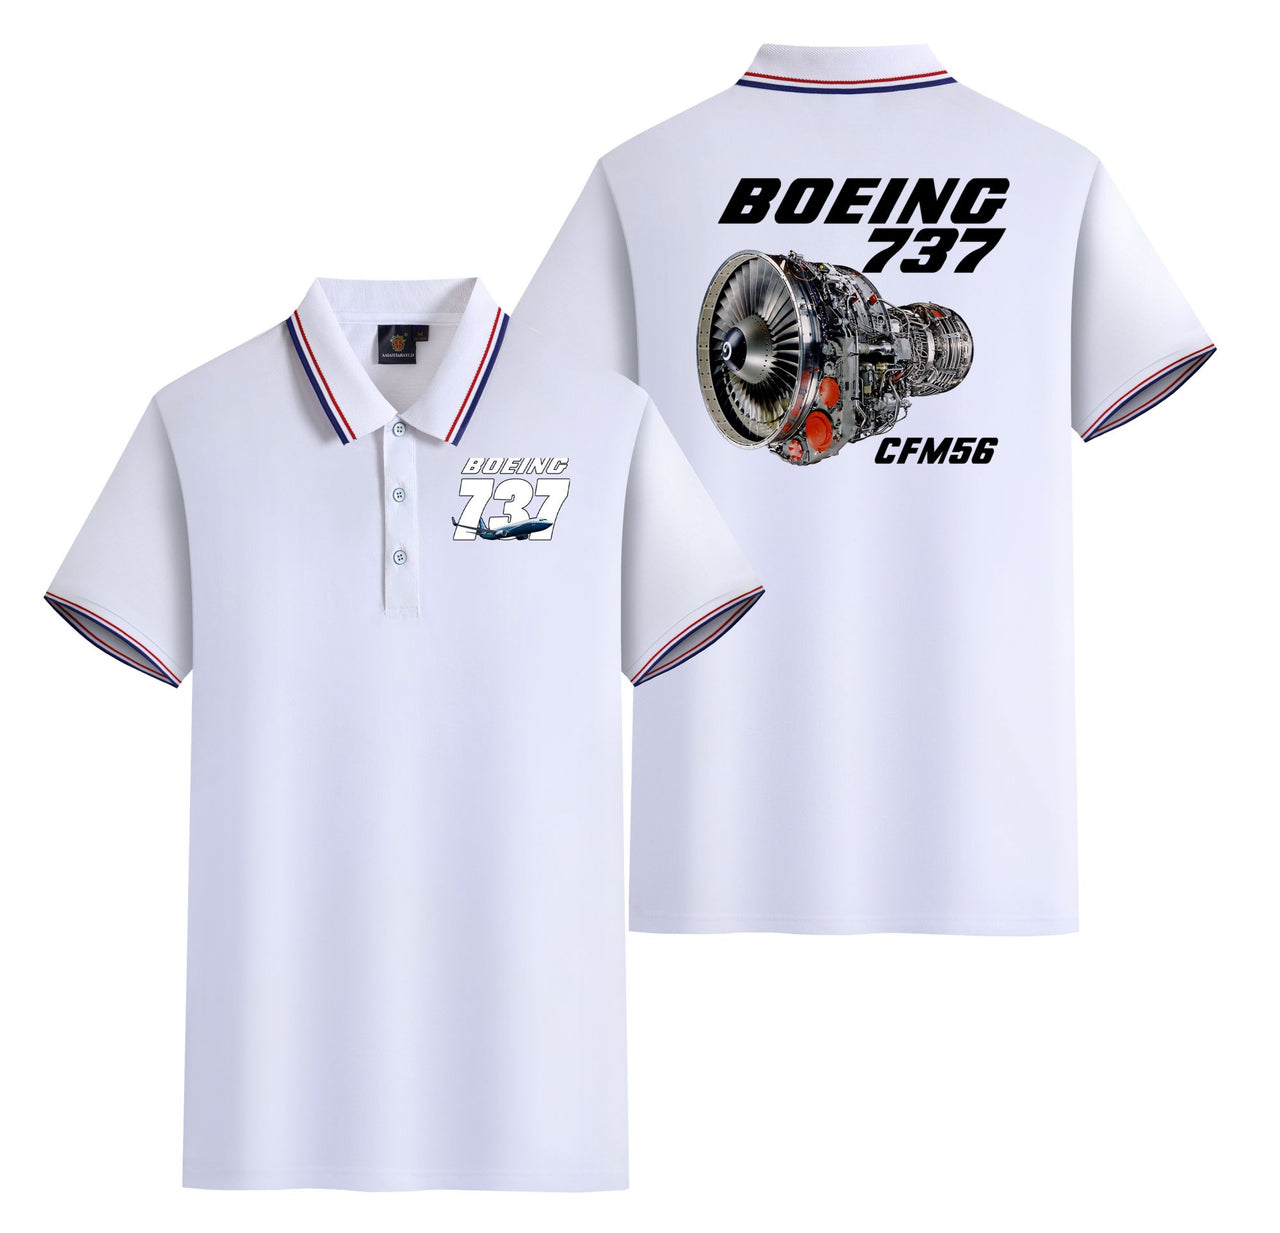 Boeing 737 Engine & CFM56 Designed Stylish Polo T-Shirts (Double-Side)